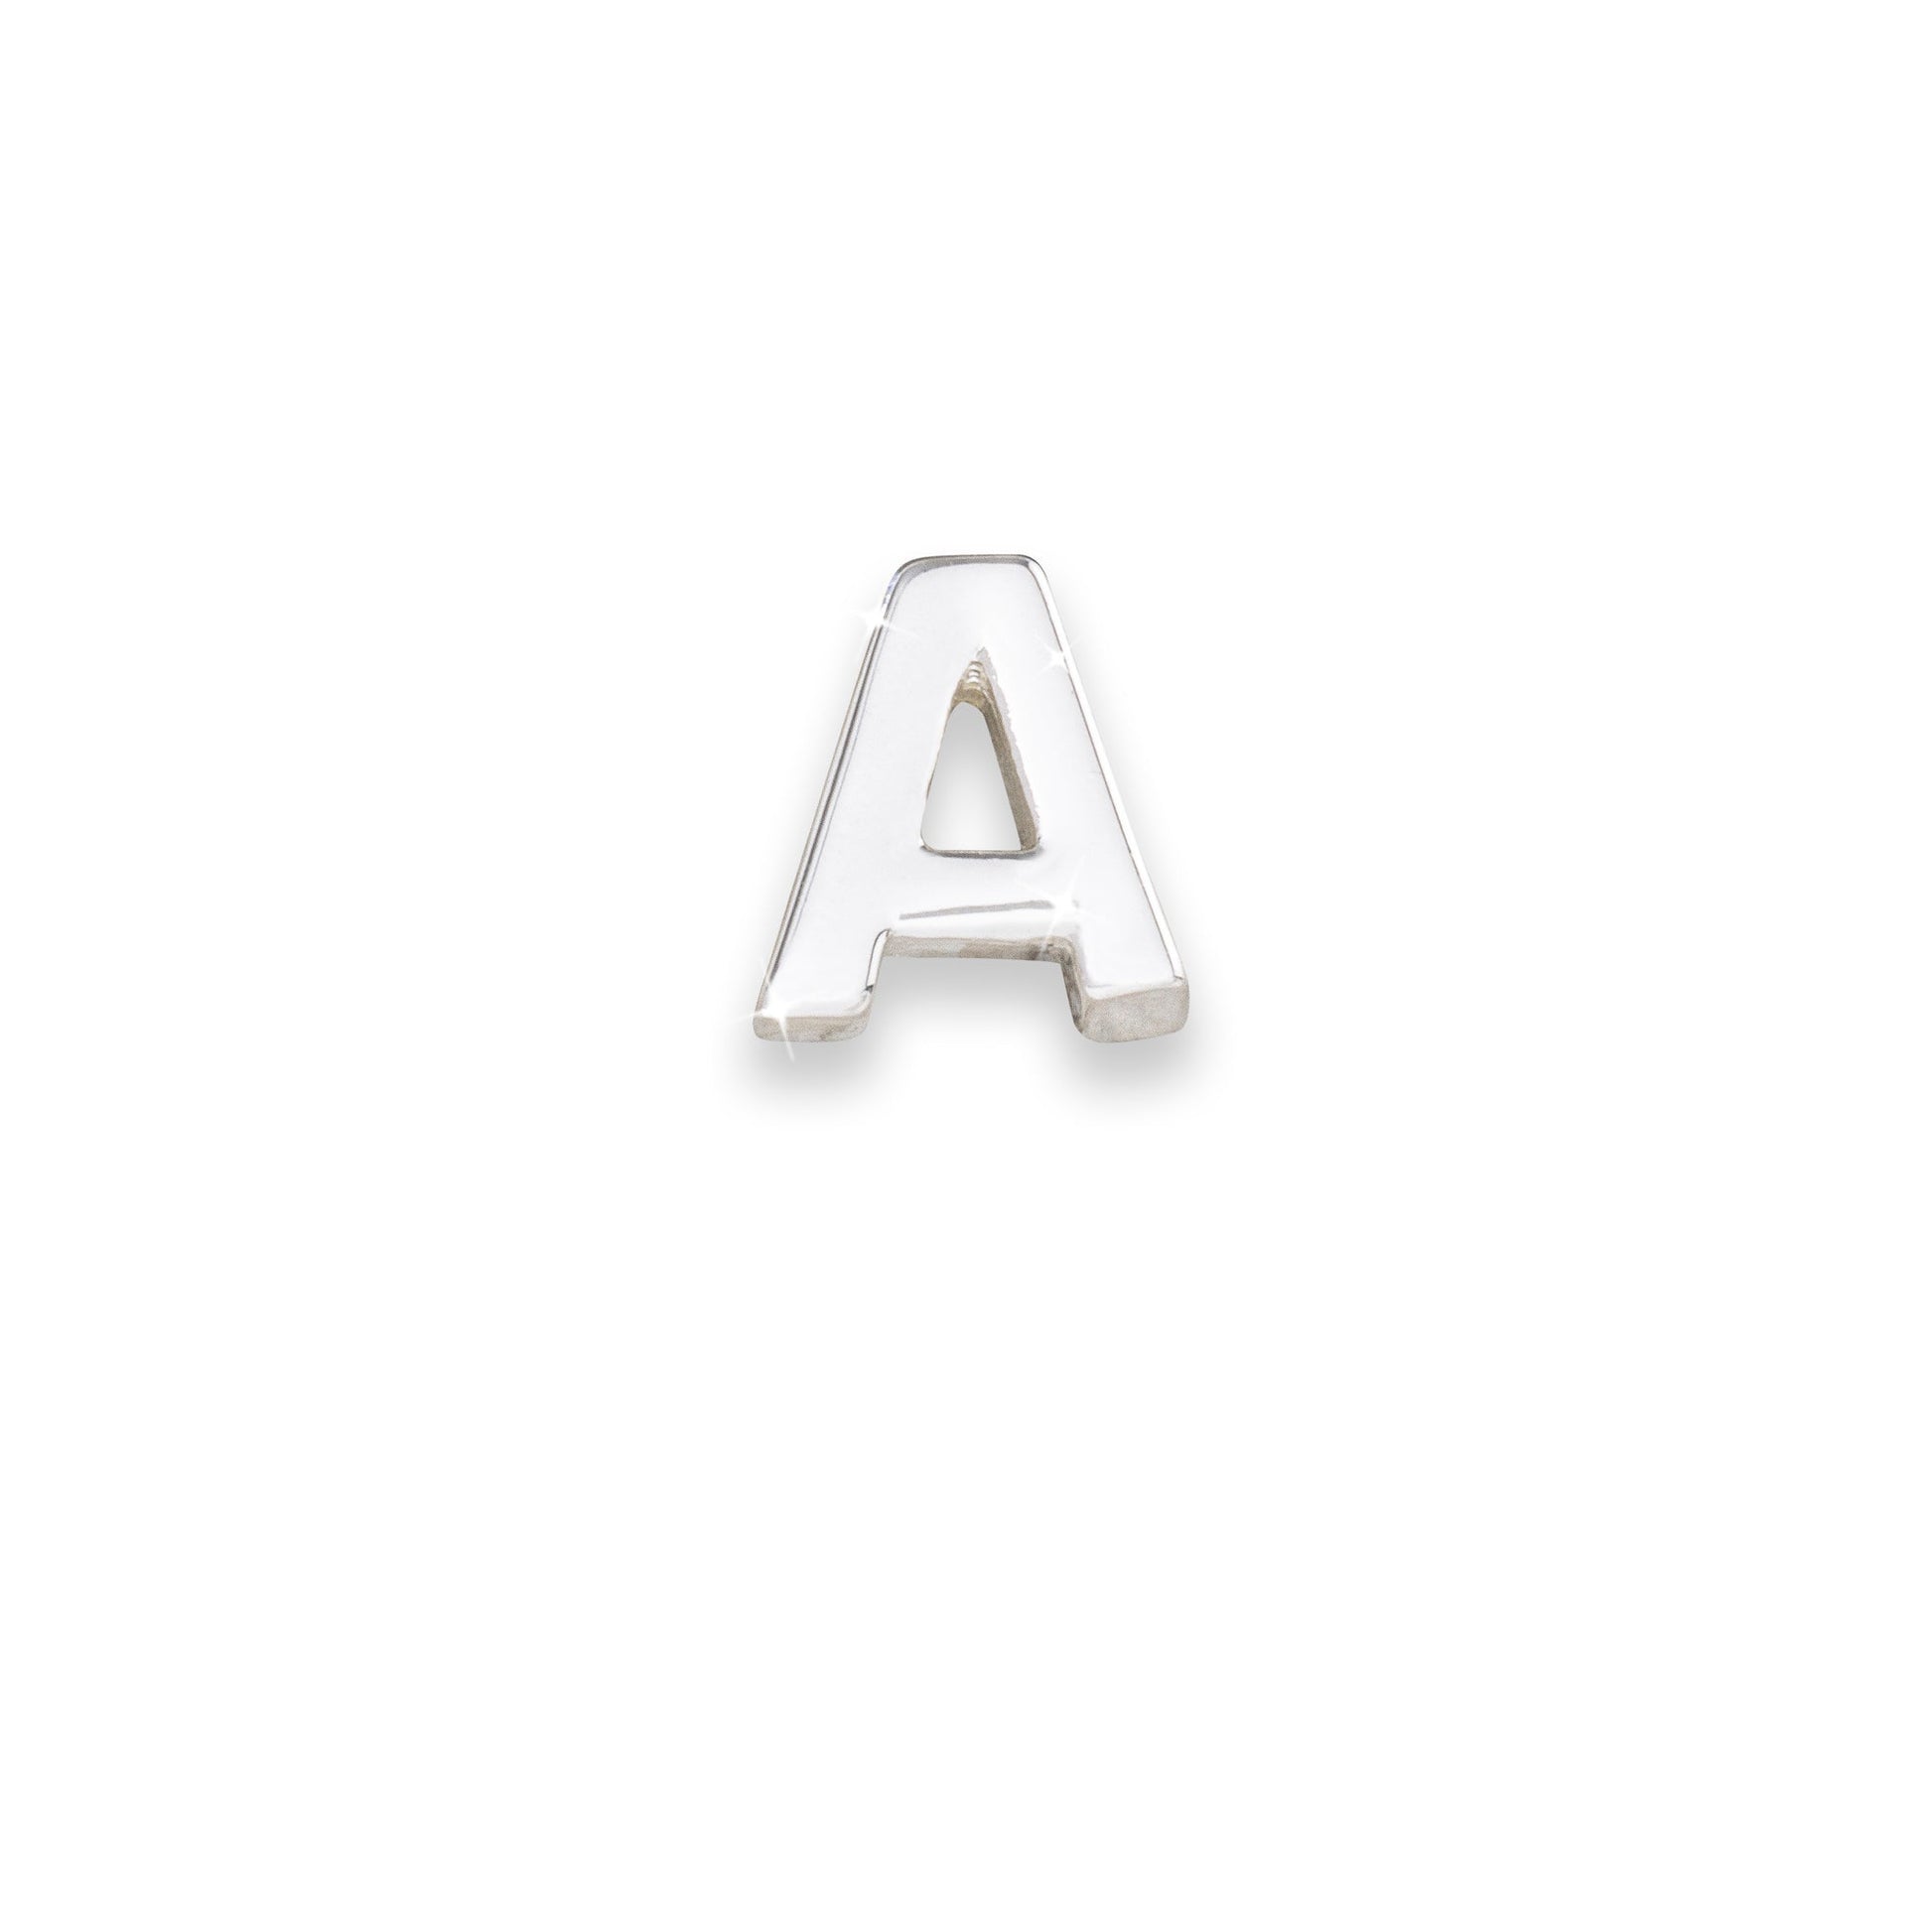 Silver letter A monogram charm for necklaces & bracelets